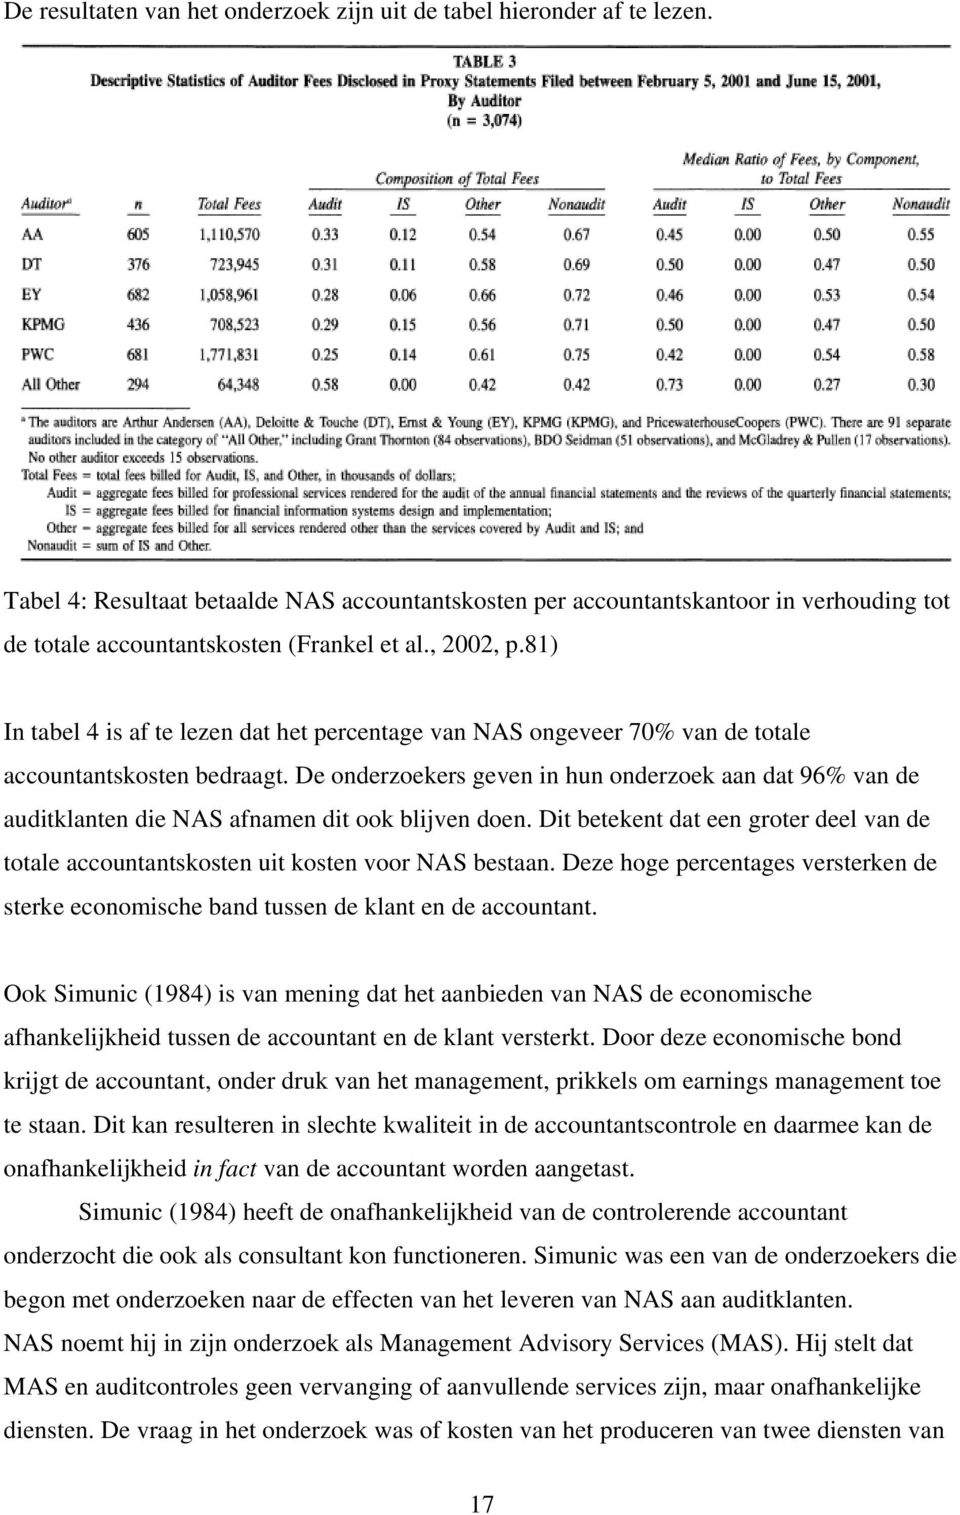 81) In tabel 4 is af te lezen dat het percentage van NAS ongeveer 70% van de totale accountantskosten bedraagt.